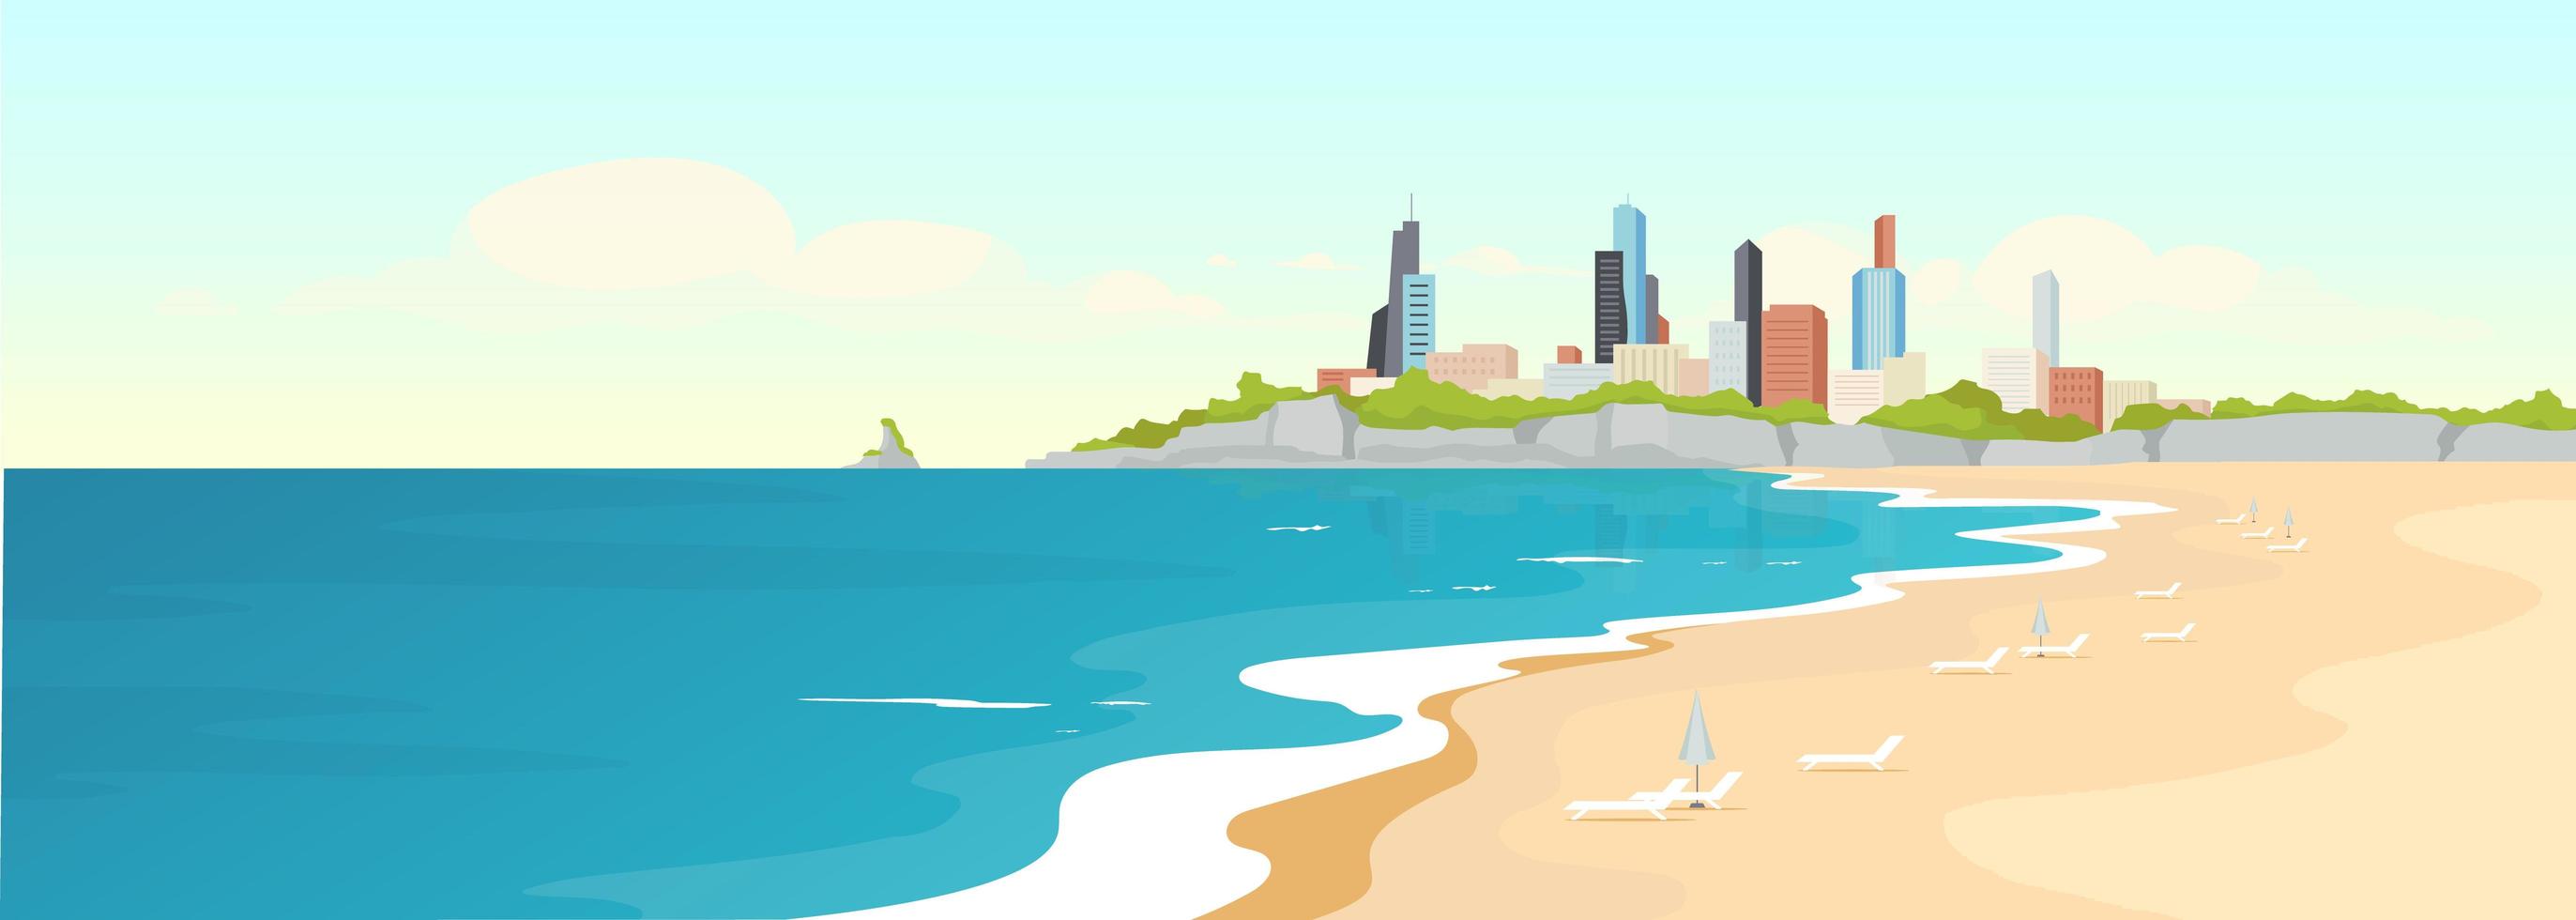 illustrazione vettoriale di colore piatto spiaggia sabbiosa urbana